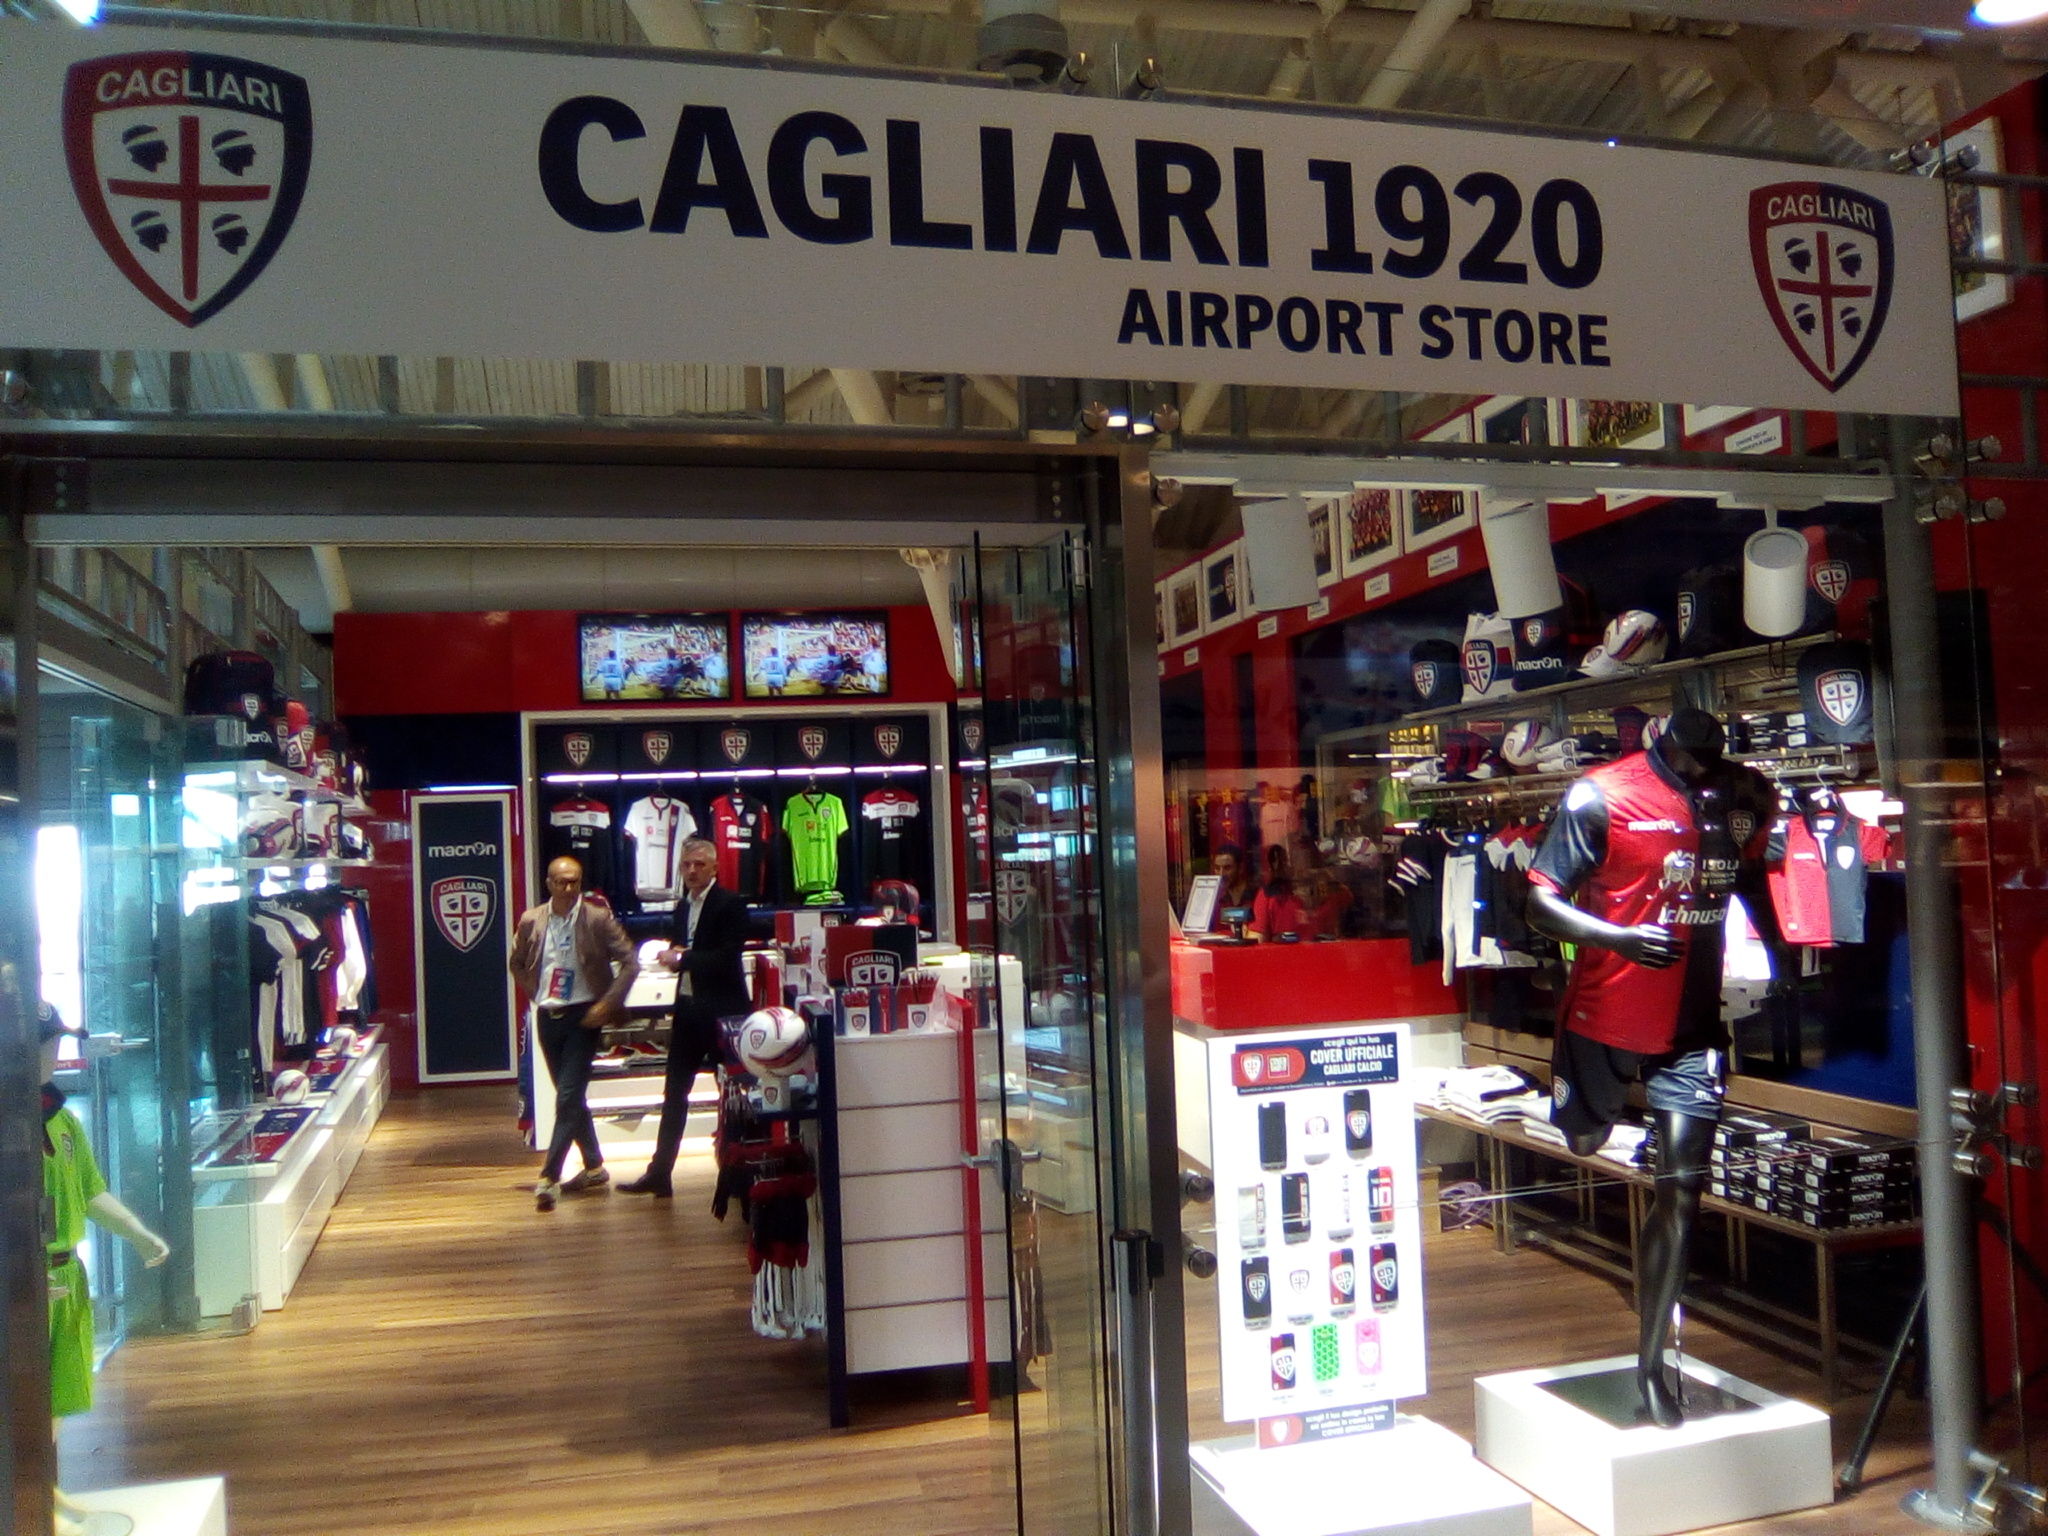 Inaugurato il Cagliari 1920 Airport Store. Giulini: ''Grande soddisfazione''